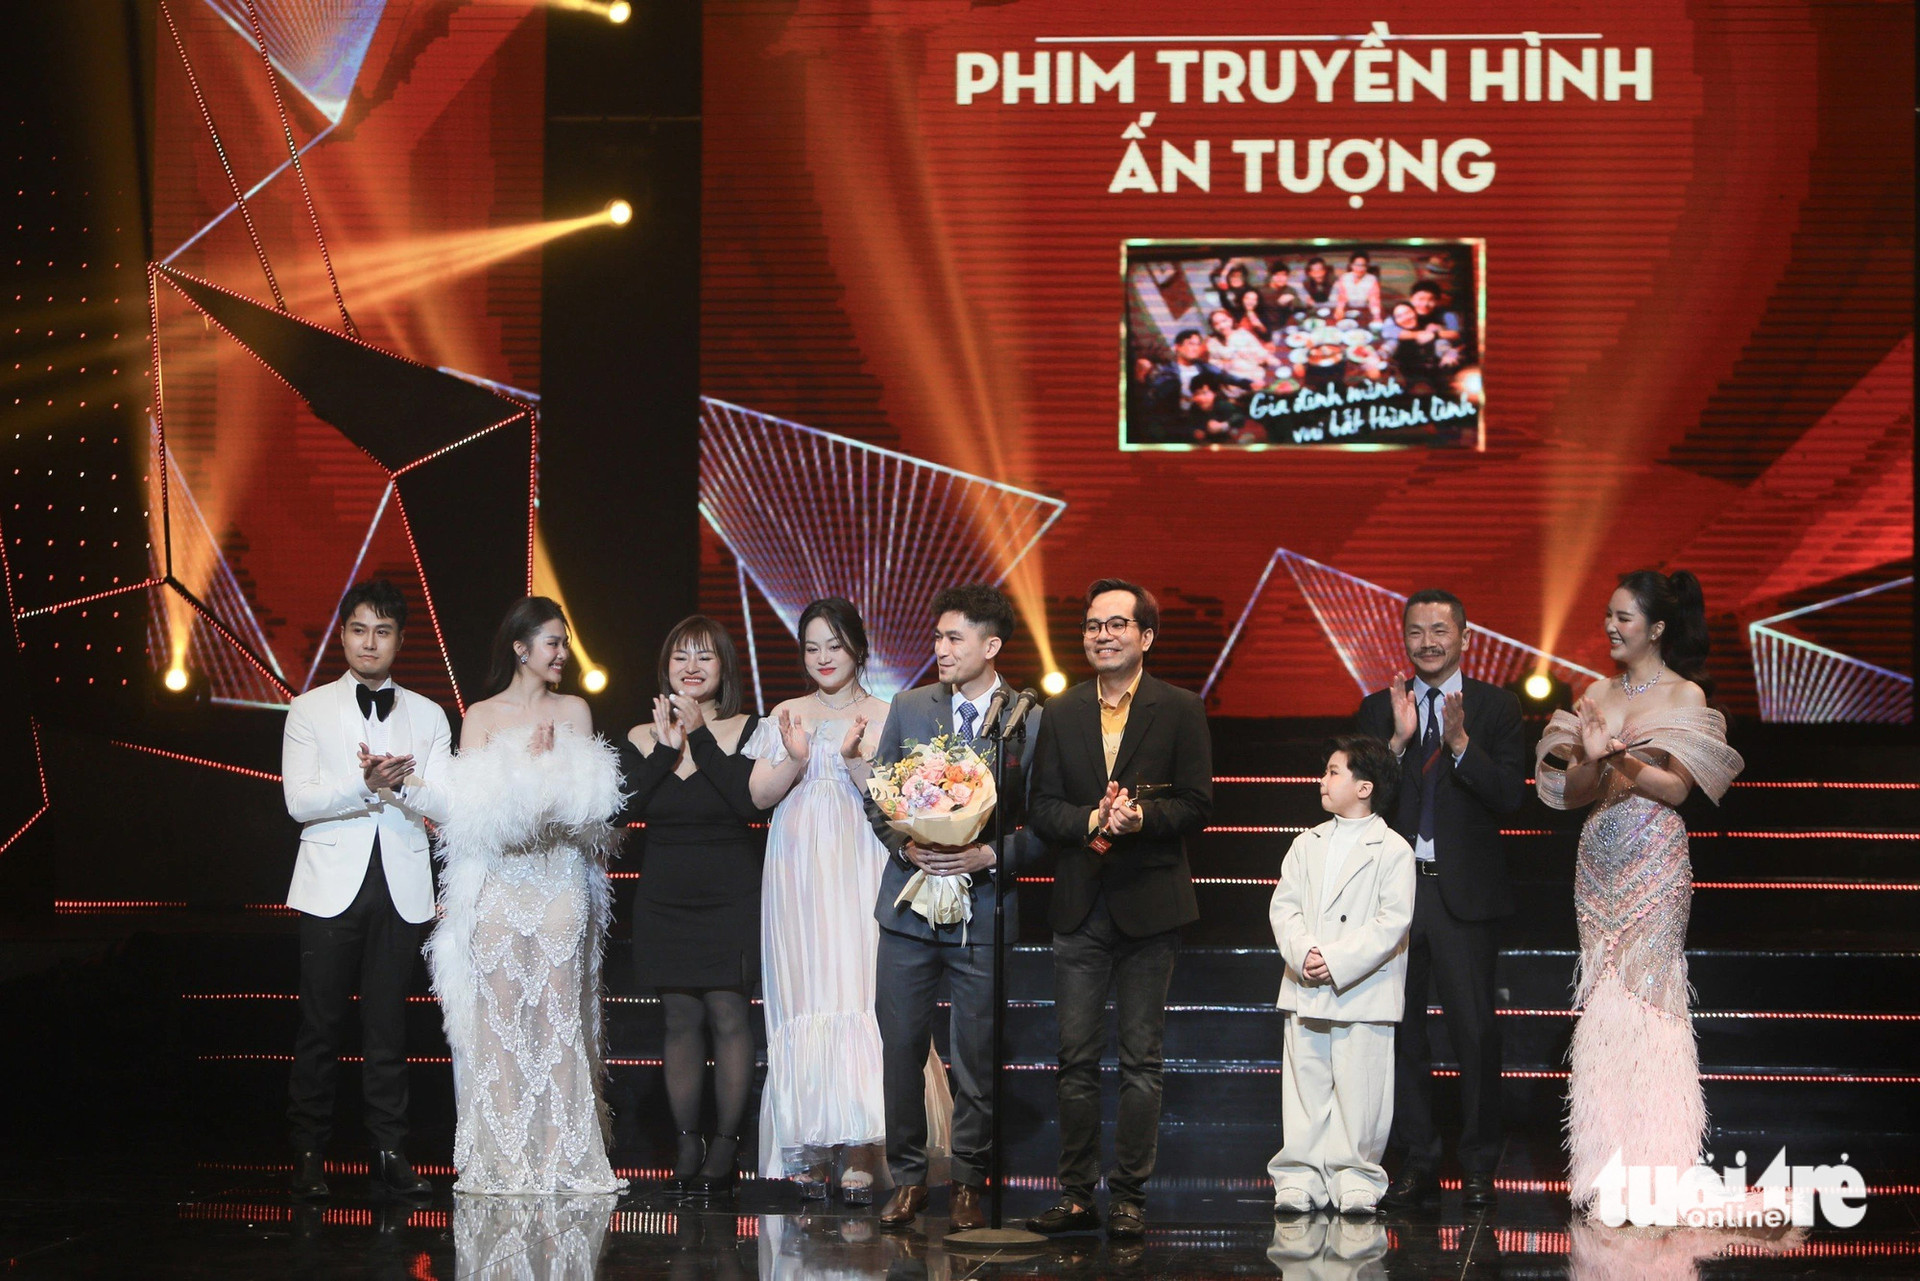 Đoàn phim Gia đình mình vui bất thình lình nhận giải Phim truyền hình ấn tượng của năm - Ảnh: DANH KHANG